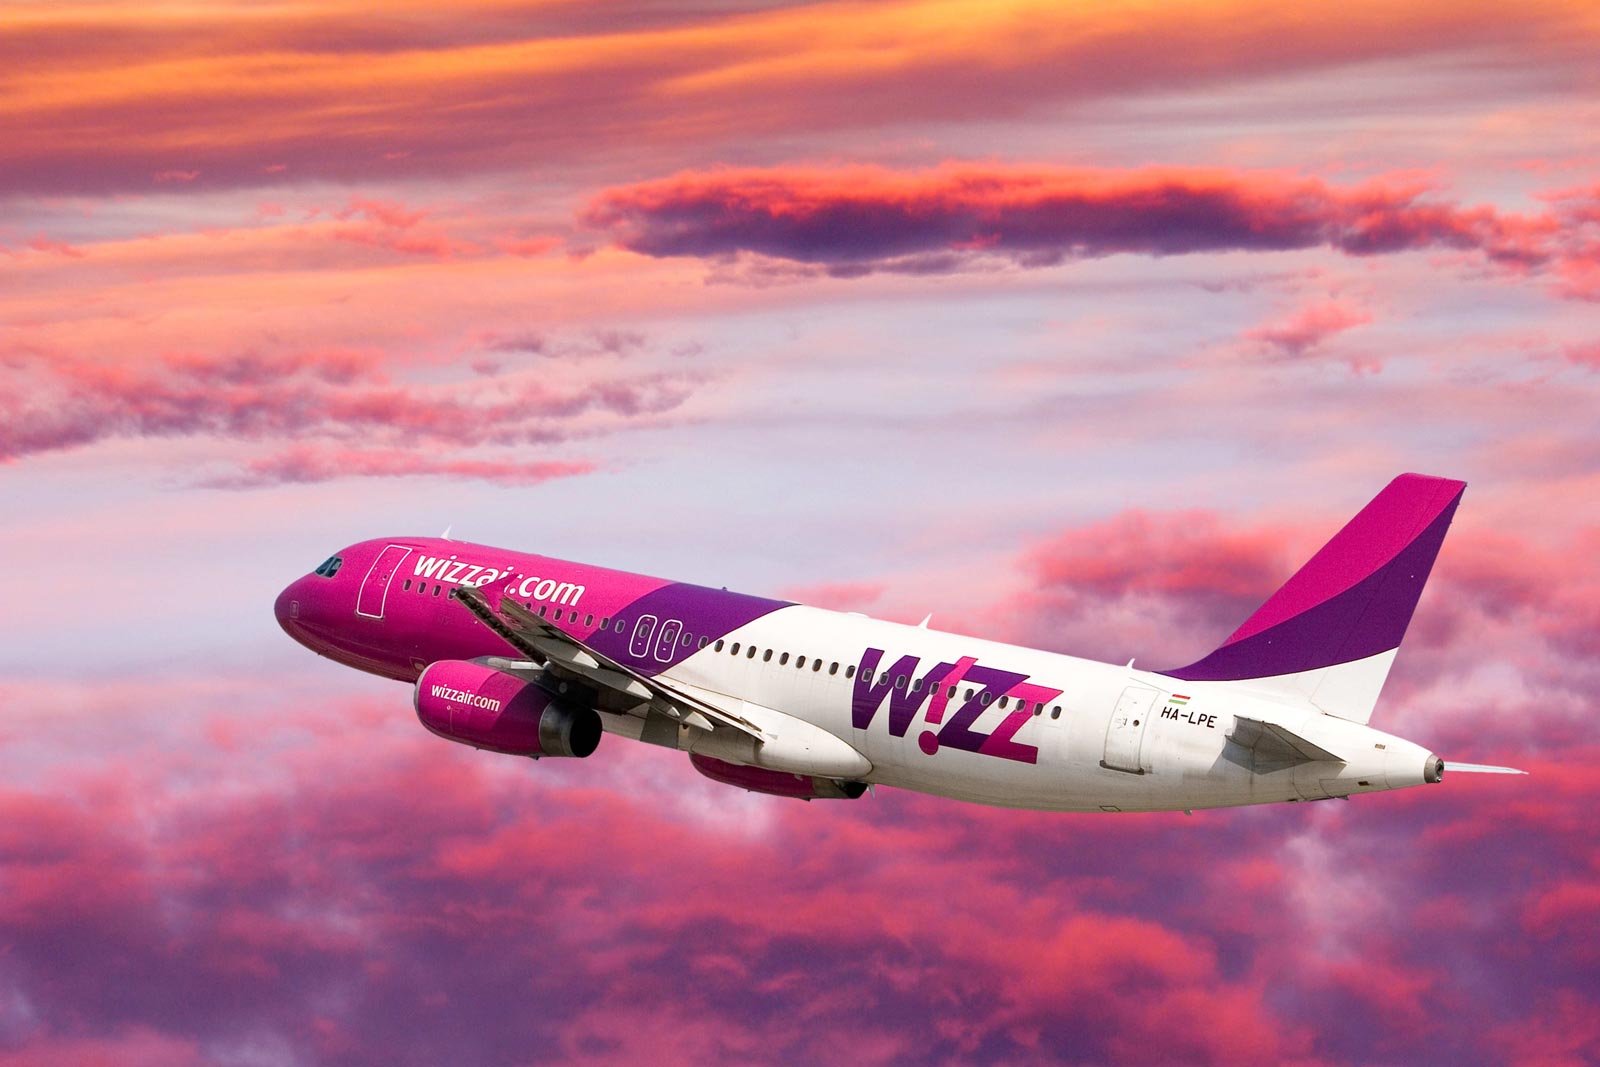 Vedomosztyi - A Wizz Air oroszországi leányvállalatot létesítene